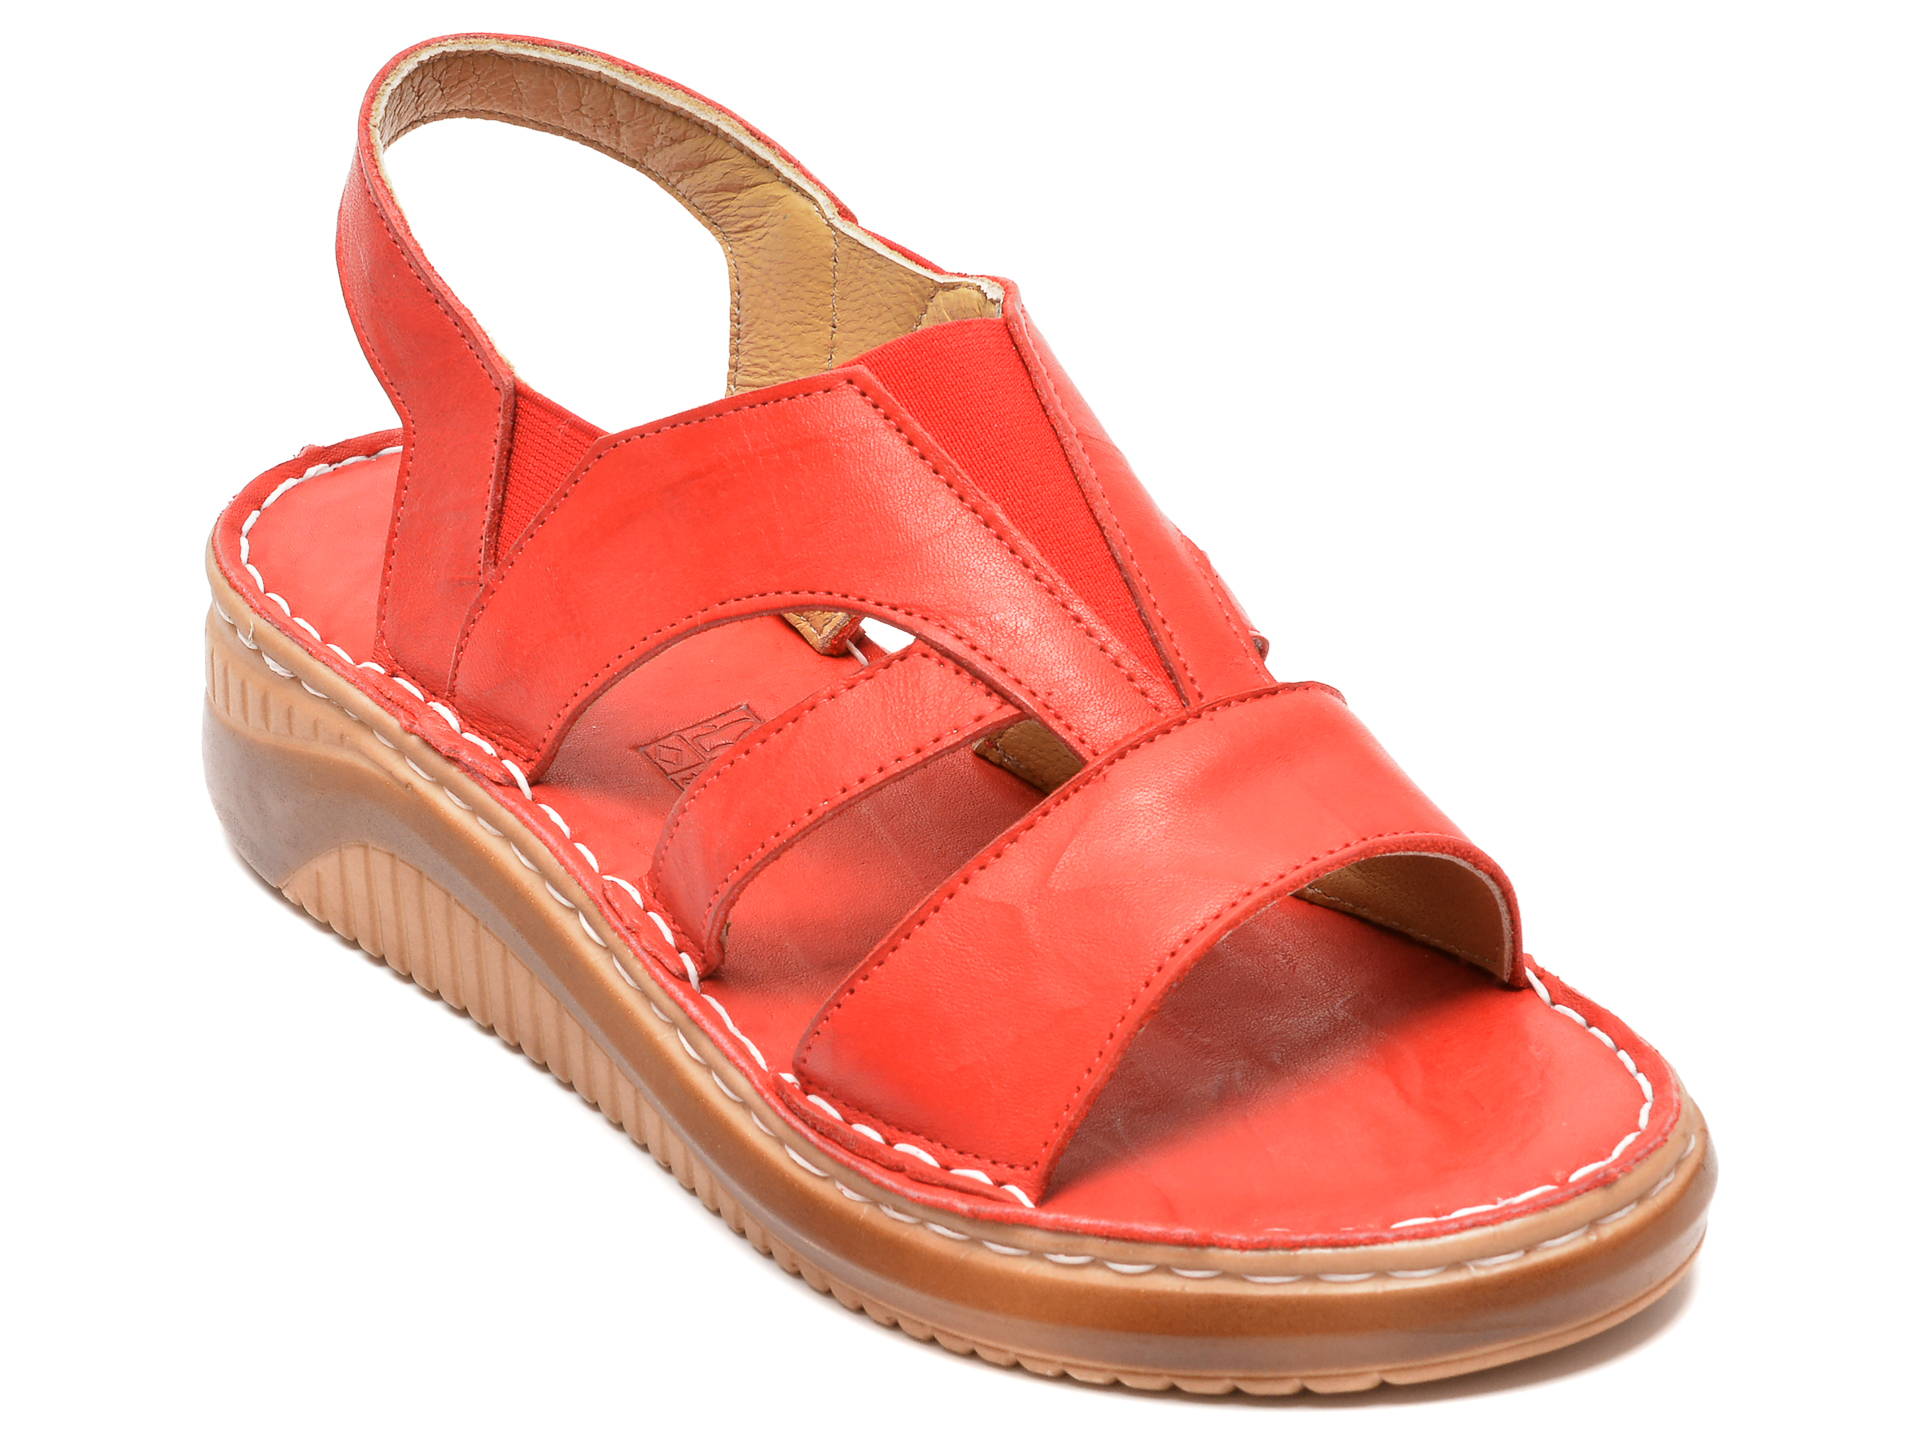 Sandale PAVARELLA rosii, 217, din piele naturala /femei/sandale imagine noua